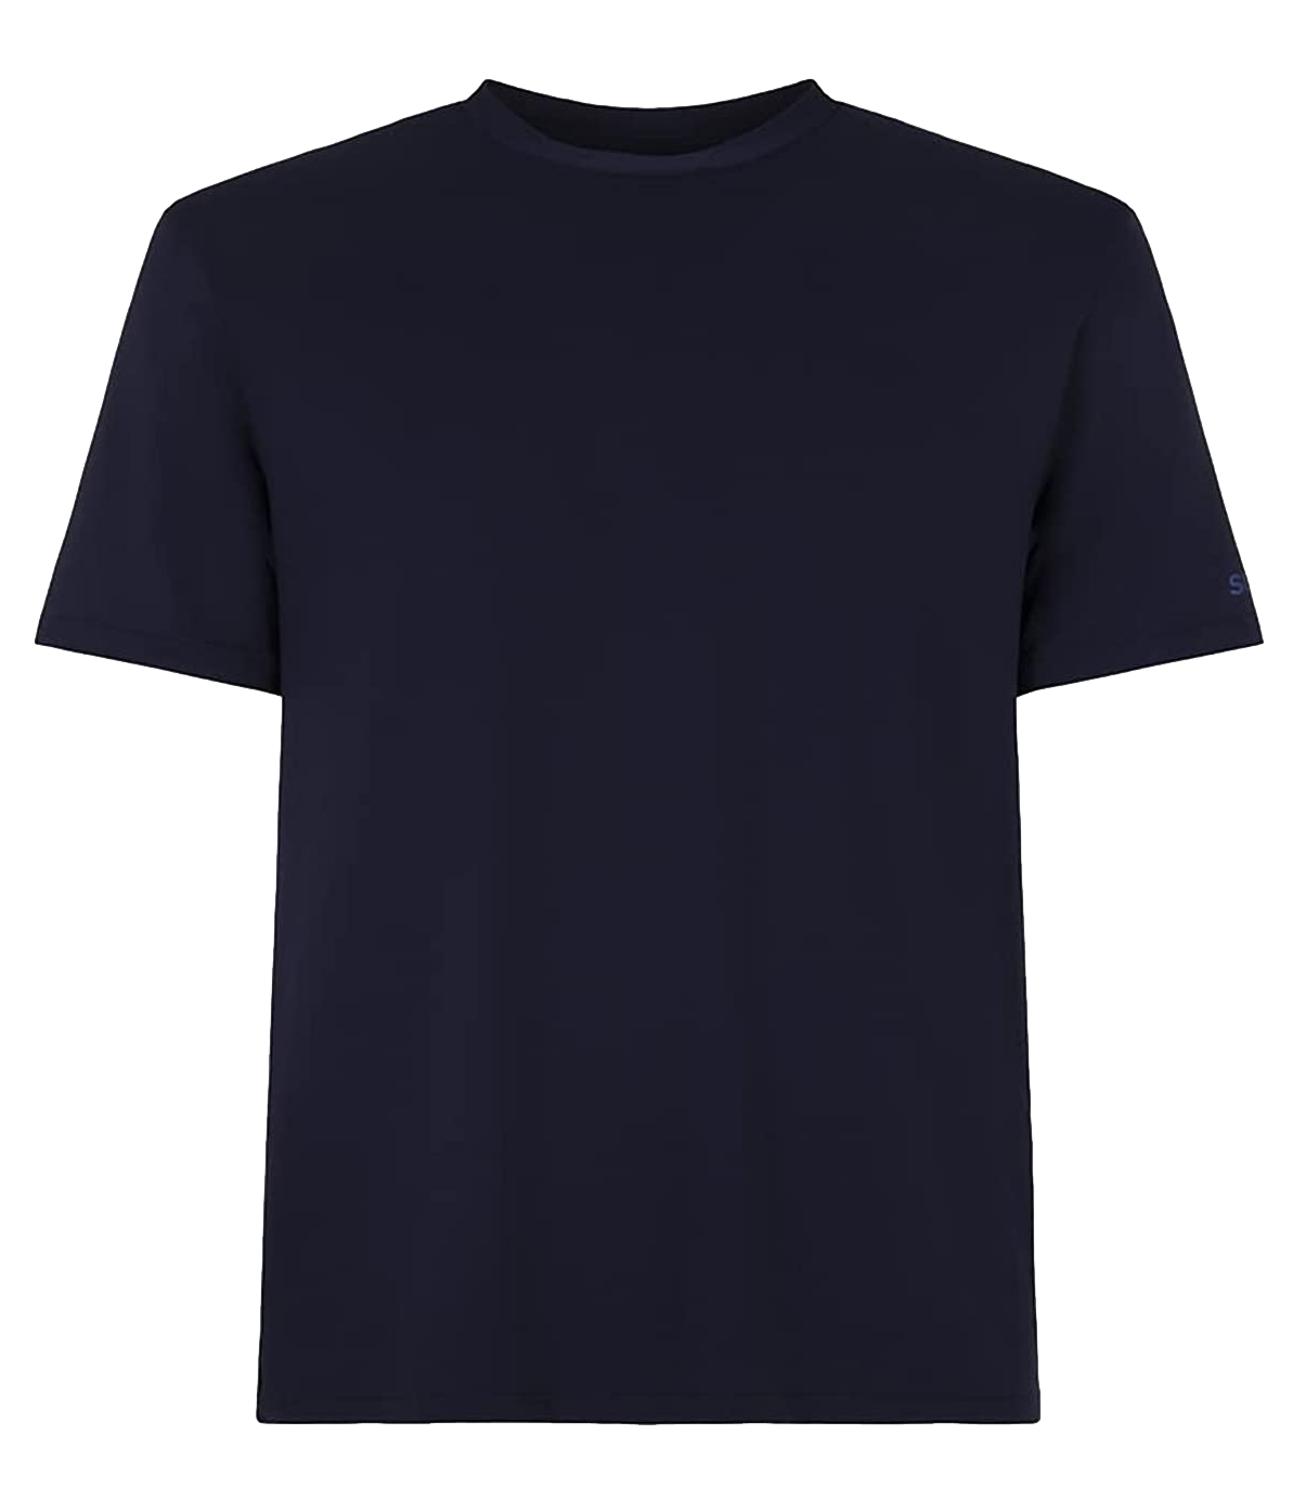 T-shirt blu navy SUNS in cotone con logo sul braccio